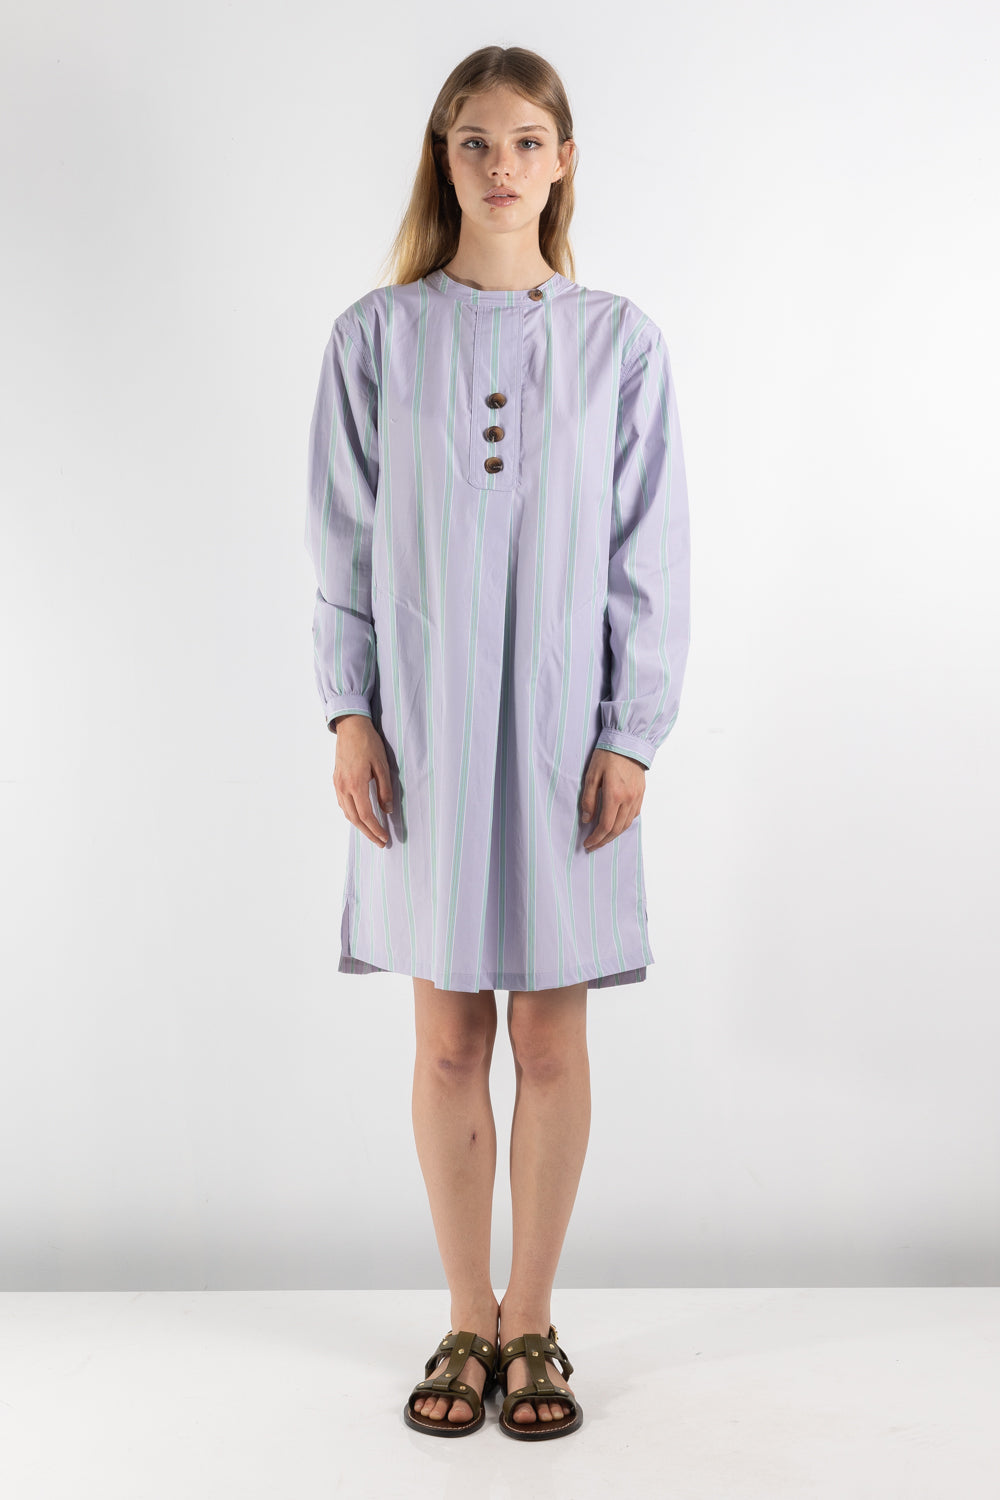 Womens Dress | Soeur Onagre Dress | The Standard Store